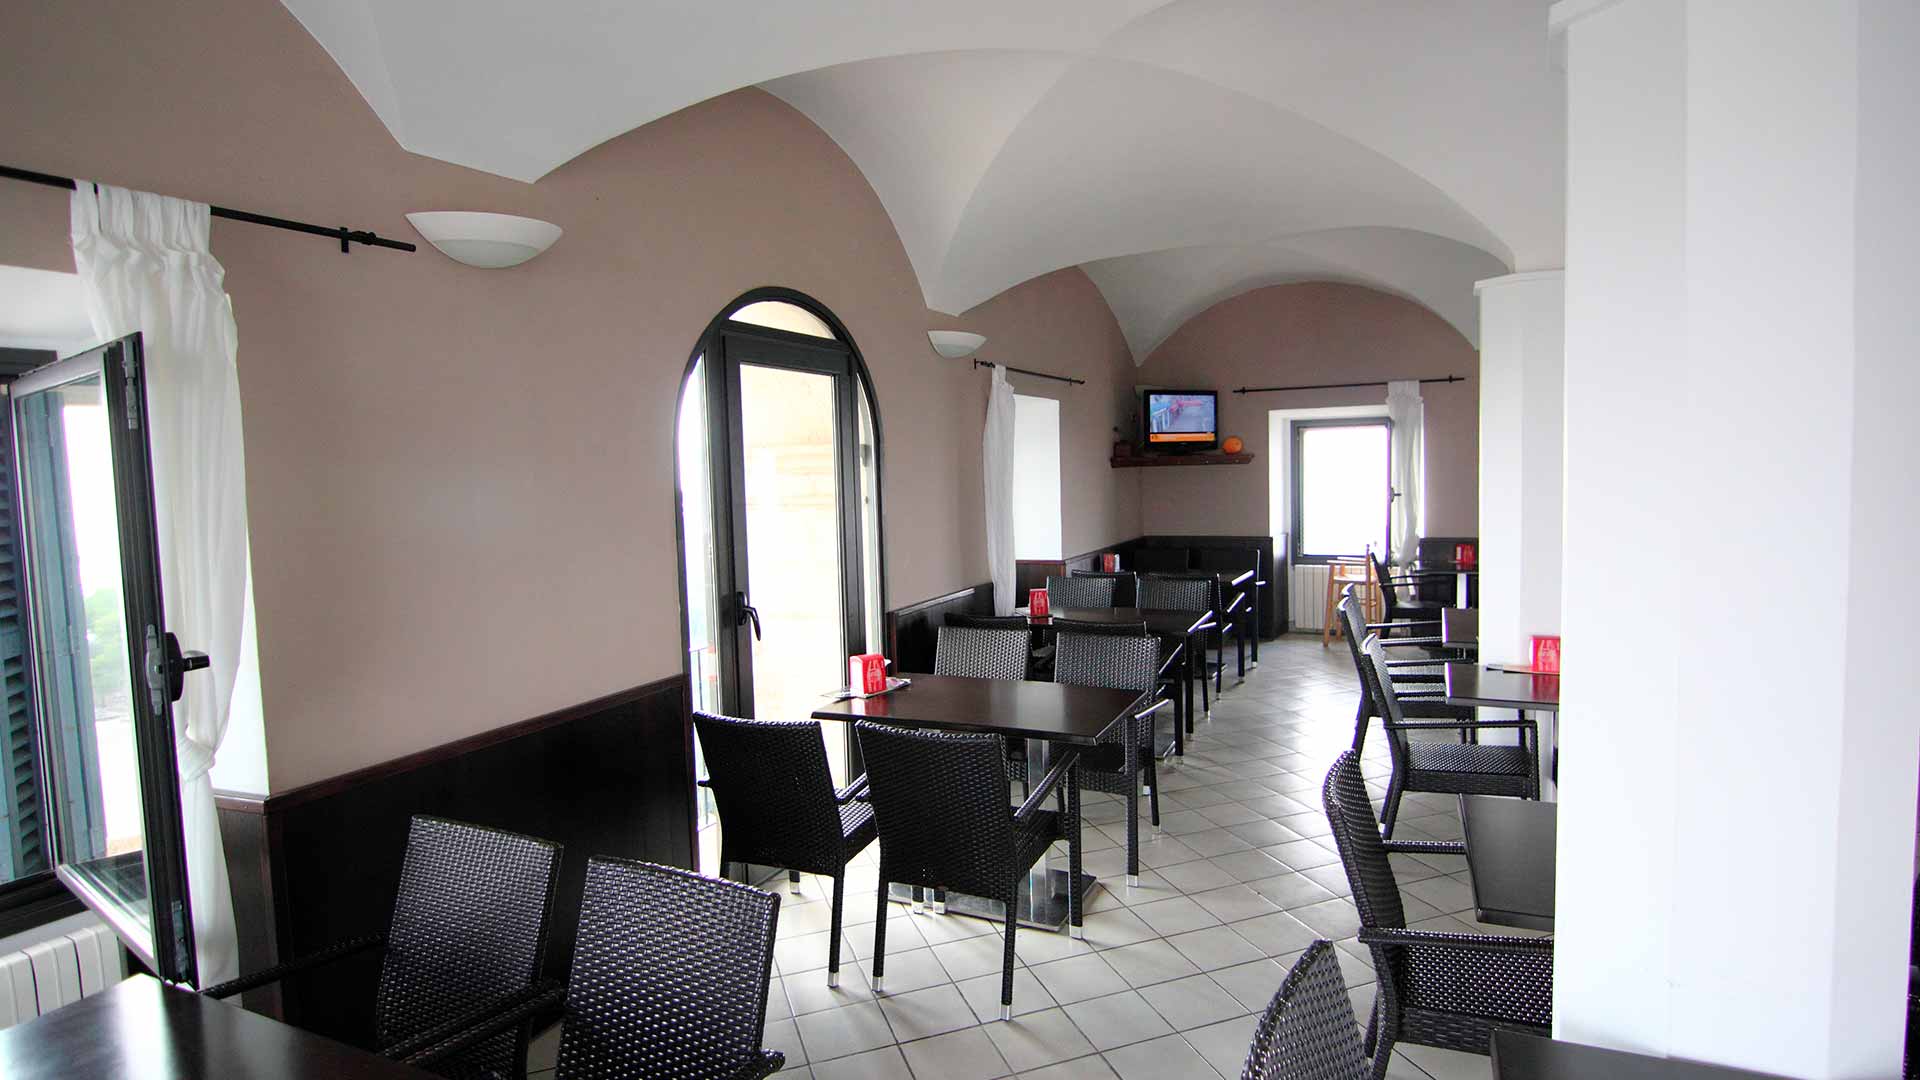 Cafetería Can Calco 510 Sant Salvador